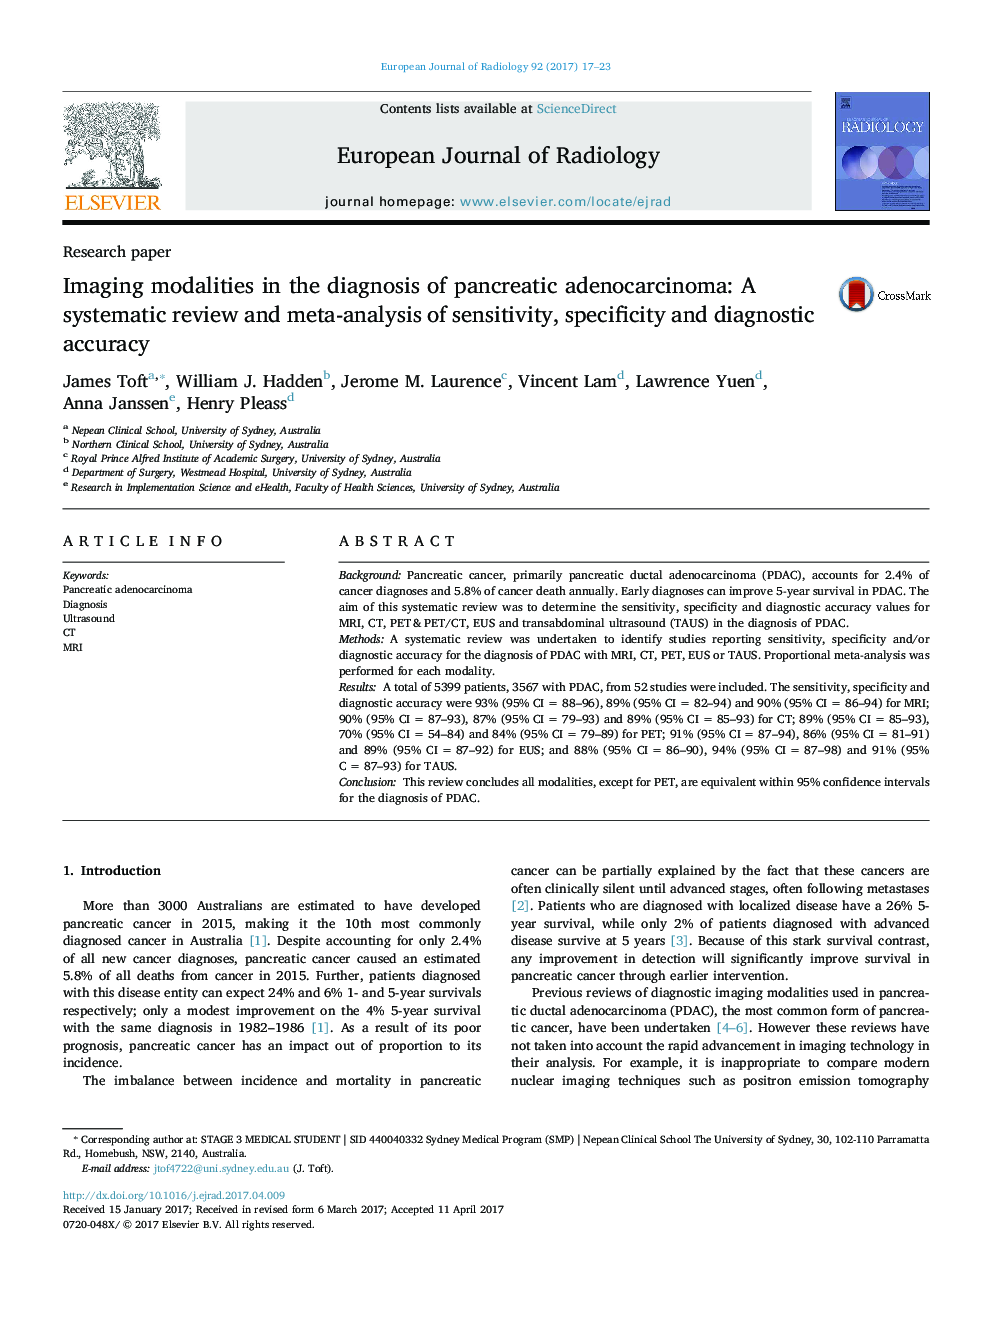 روش های تصویربرداری در تشخیص آدنوکارسینوم پانکراس: یک بررسی سیستماتیک و متاآنالیز حساسیت، خاصیت و دقت تشخیصی 